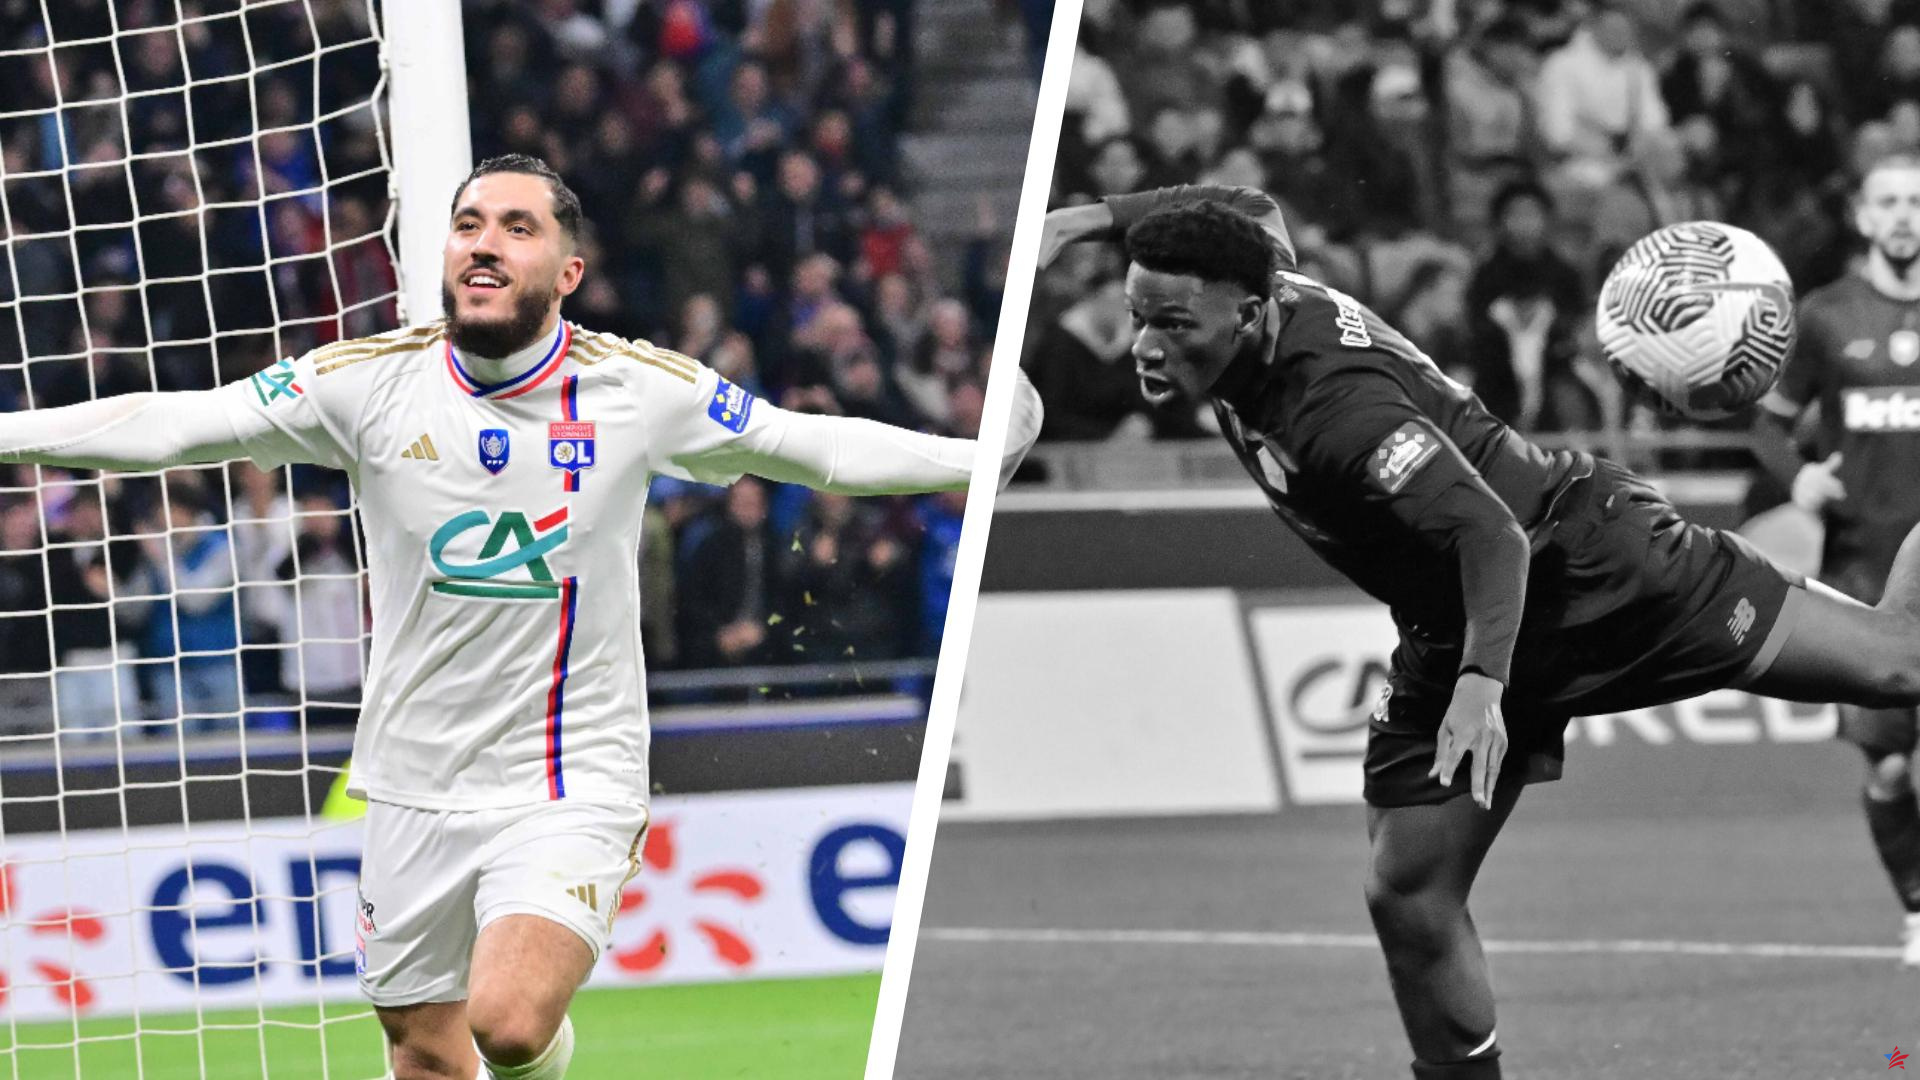 Lyon-Lille: Cherki, el mejor jugador del partido, David se pierde... Altibajos